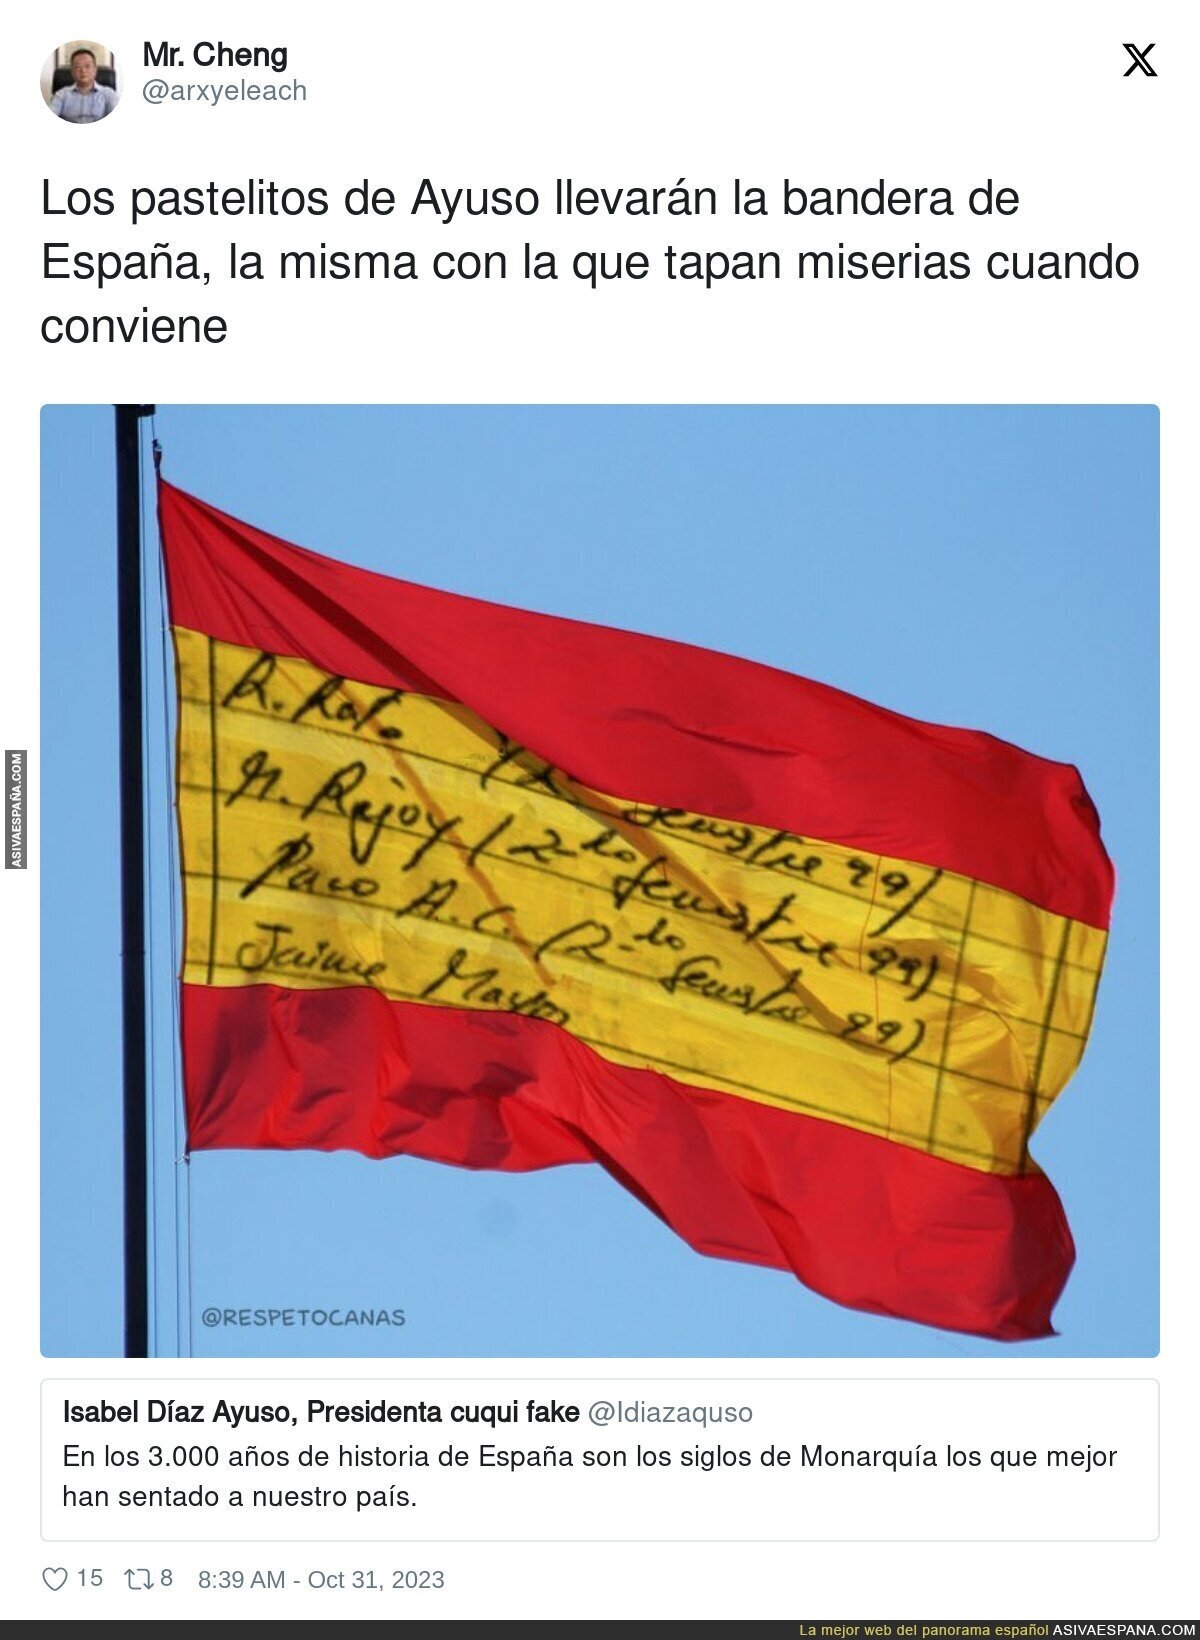 Sigue el uso de la bandera española en la derecha